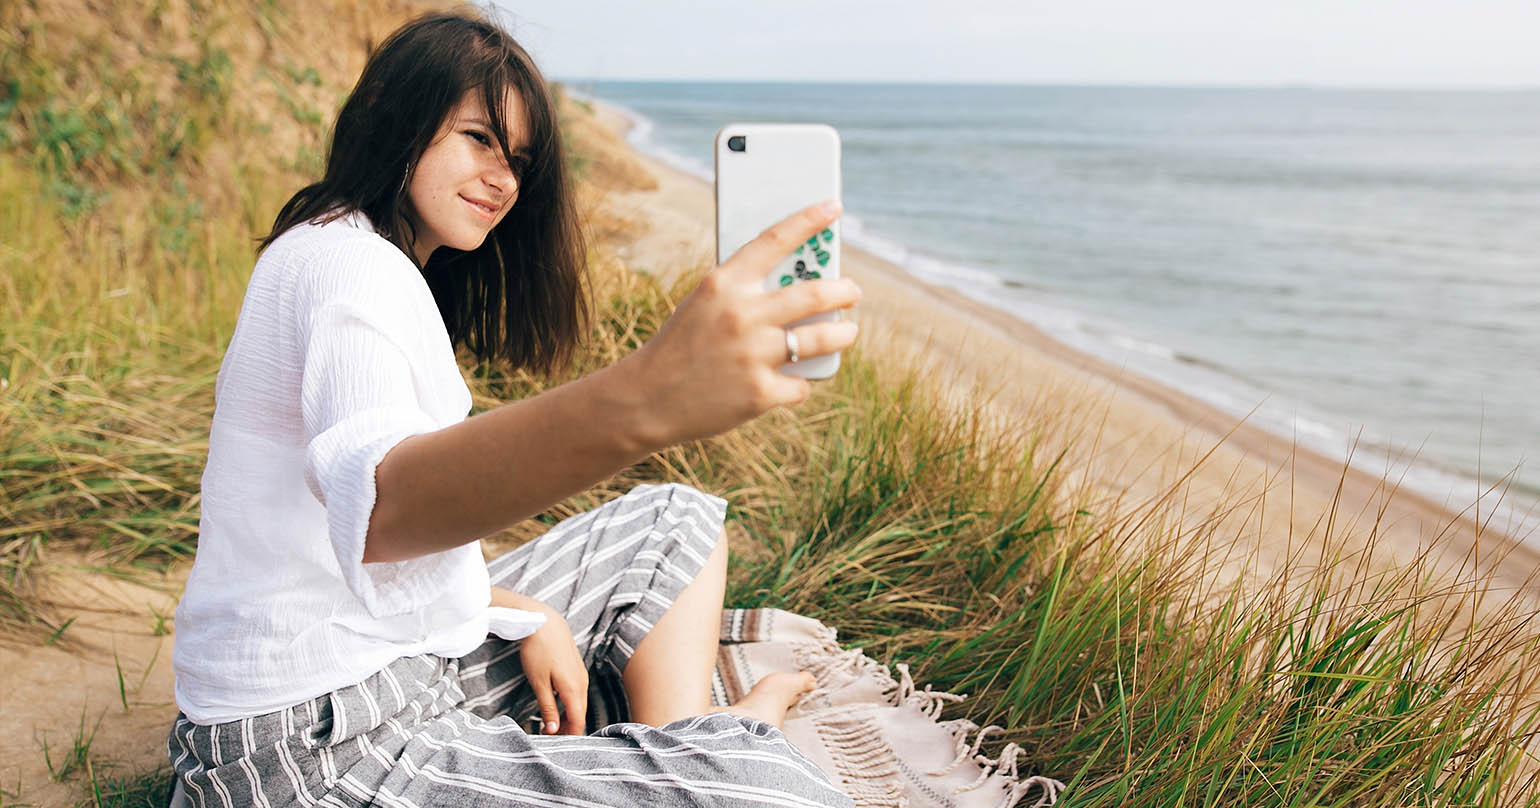 ciemnowłosa kobieta siedząca na kocu na plaży z telefonem w ręku, robiąca sobie zdjęcia do mediów społecznościowych jako symbol samotności w związku